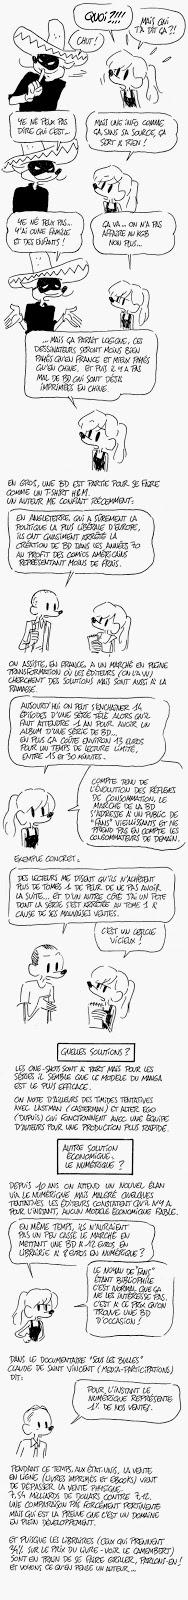 La crise de la bande dessinée francophone vue par Elric Dufau